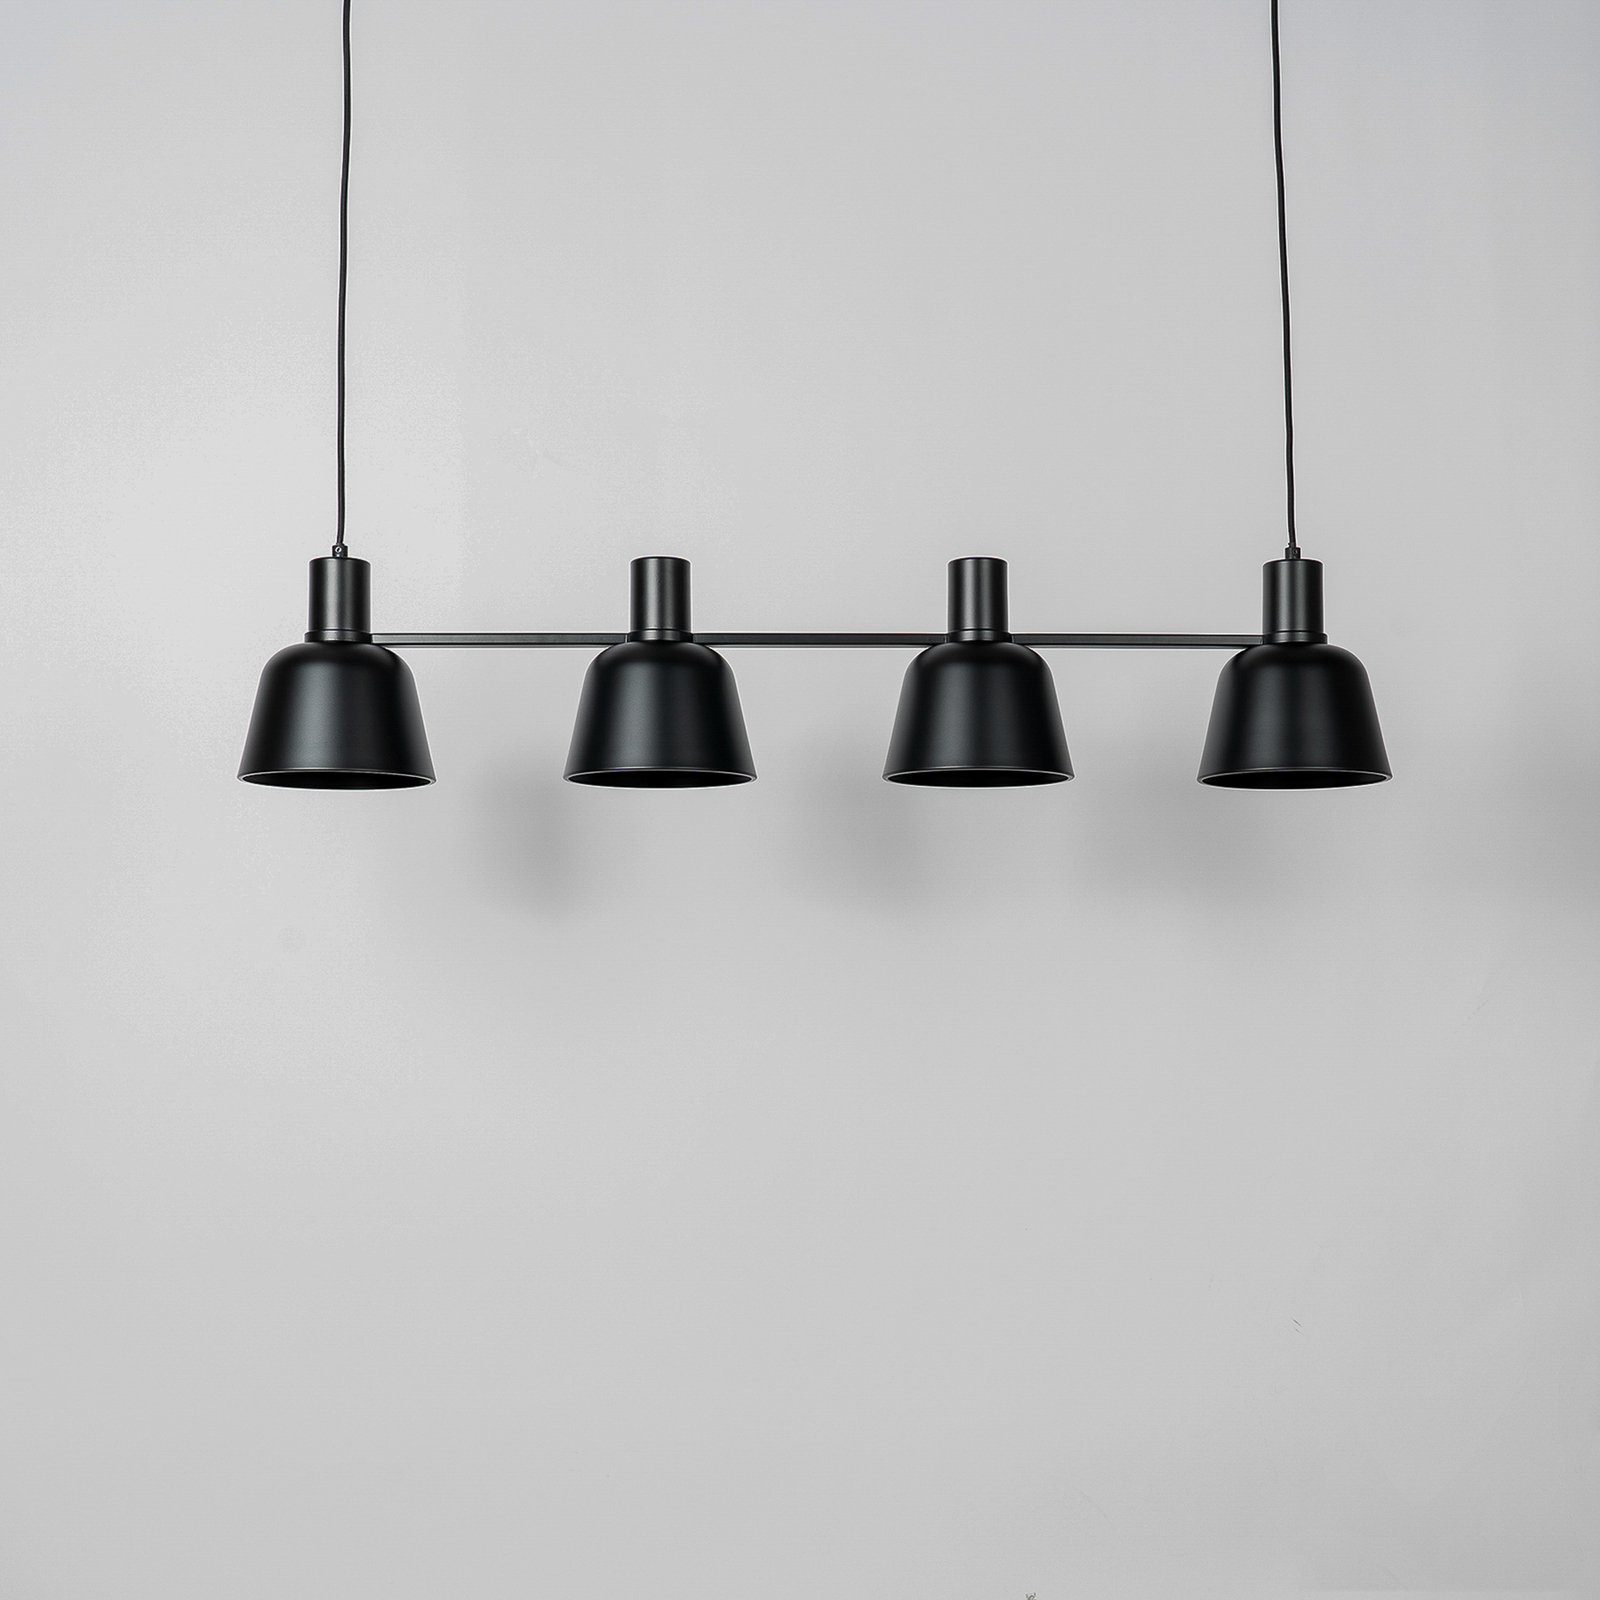 Lucande Servan-riippuvalaisin, musta, 4-lamppuinen